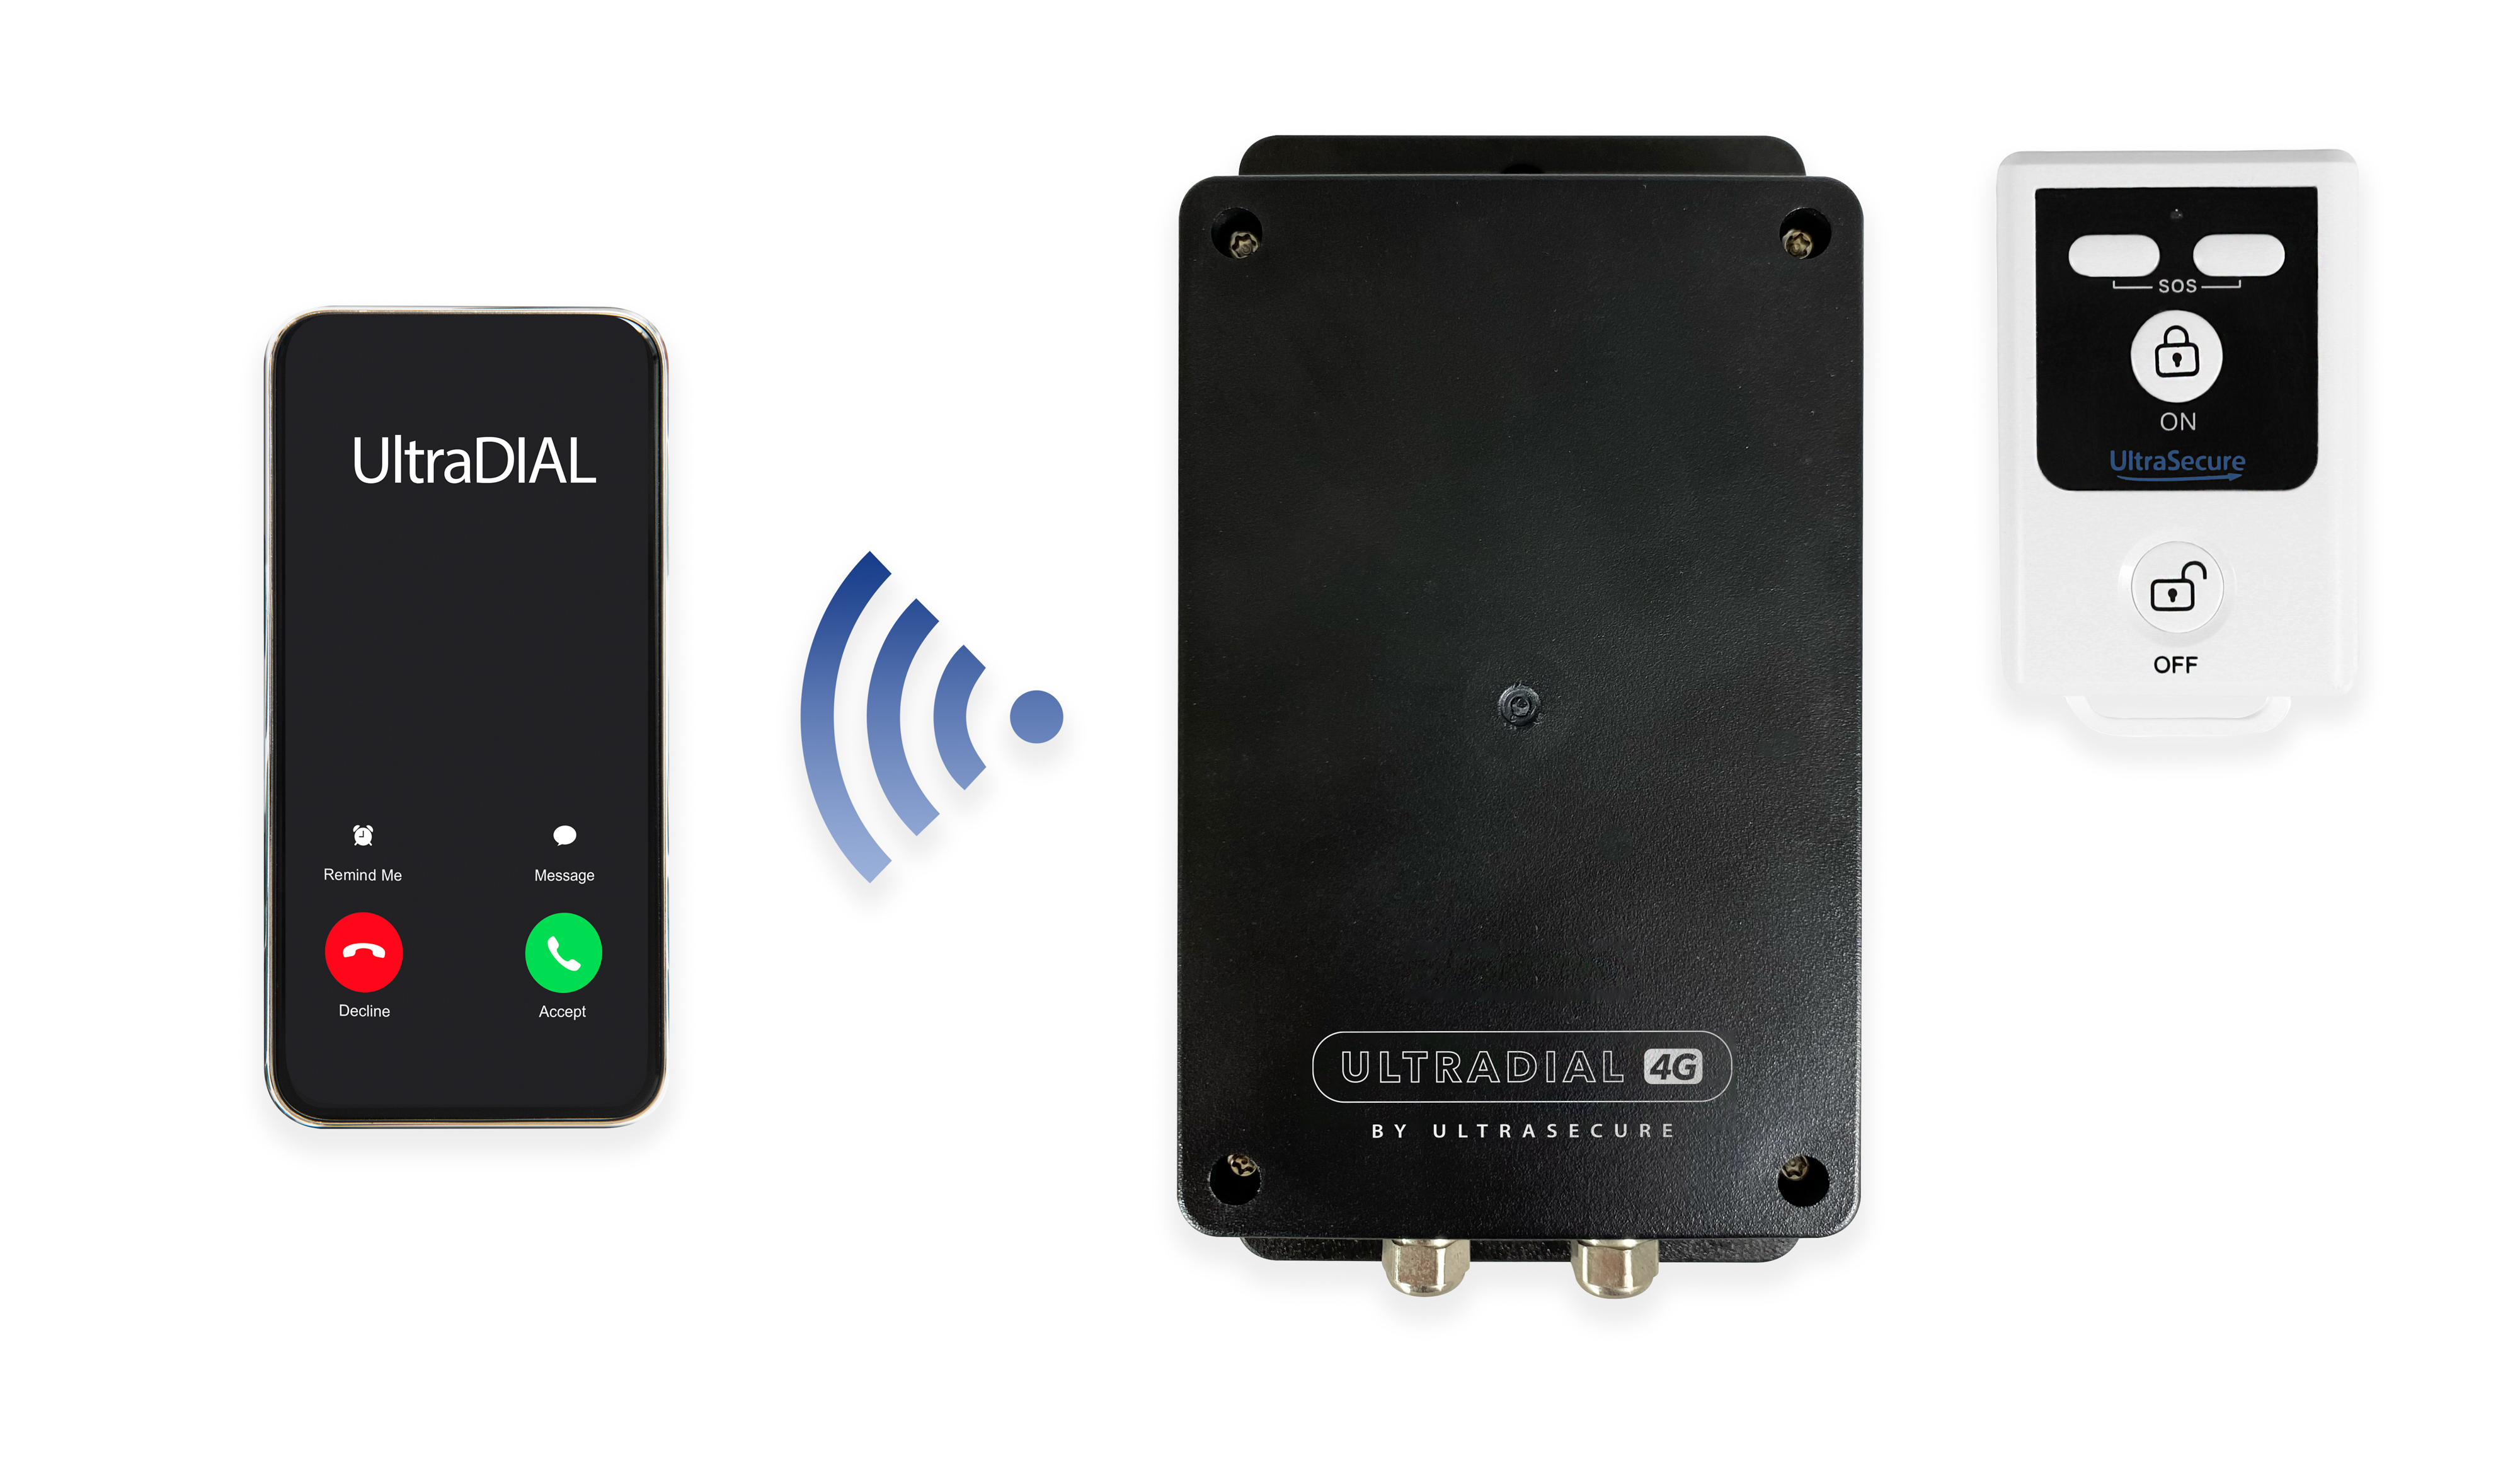 4G UltraDIAL Auto-Dialler